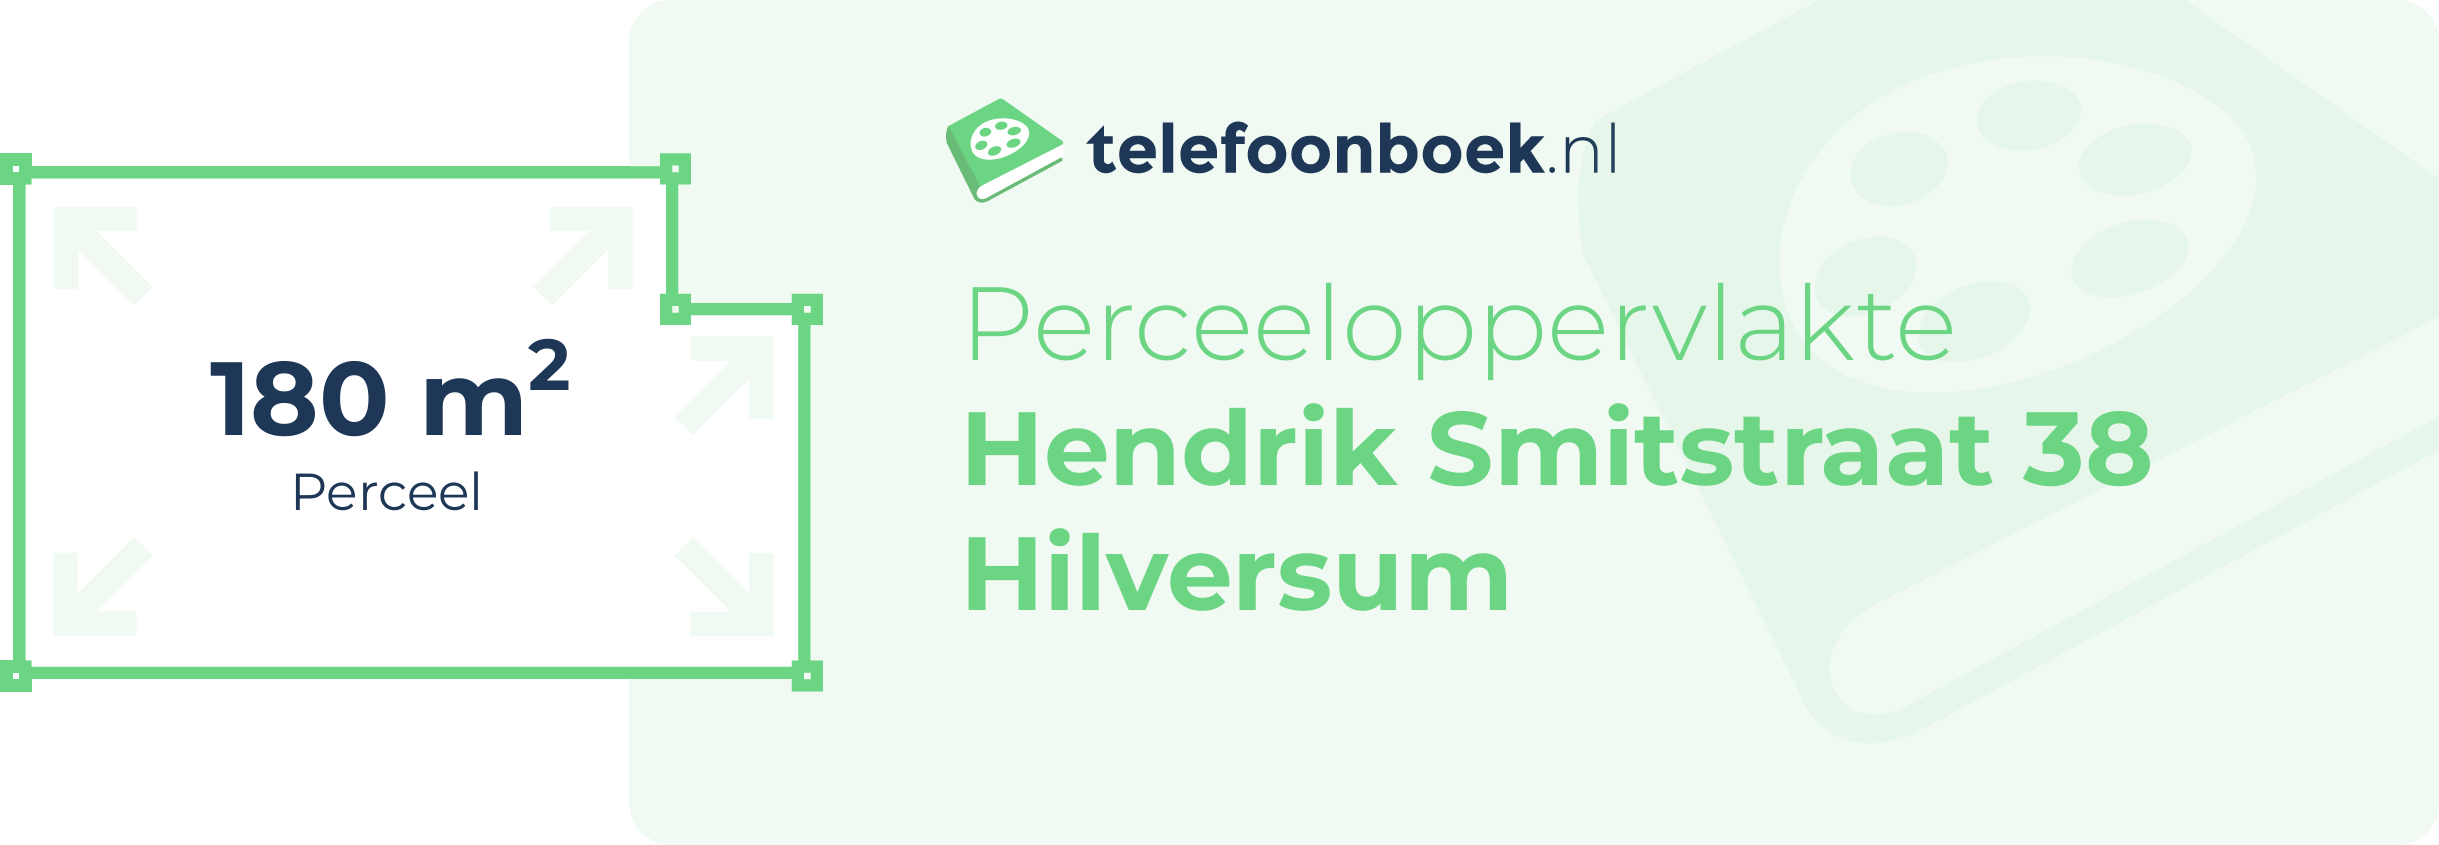 Perceeloppervlakte Hendrik Smitstraat 38 Hilversum